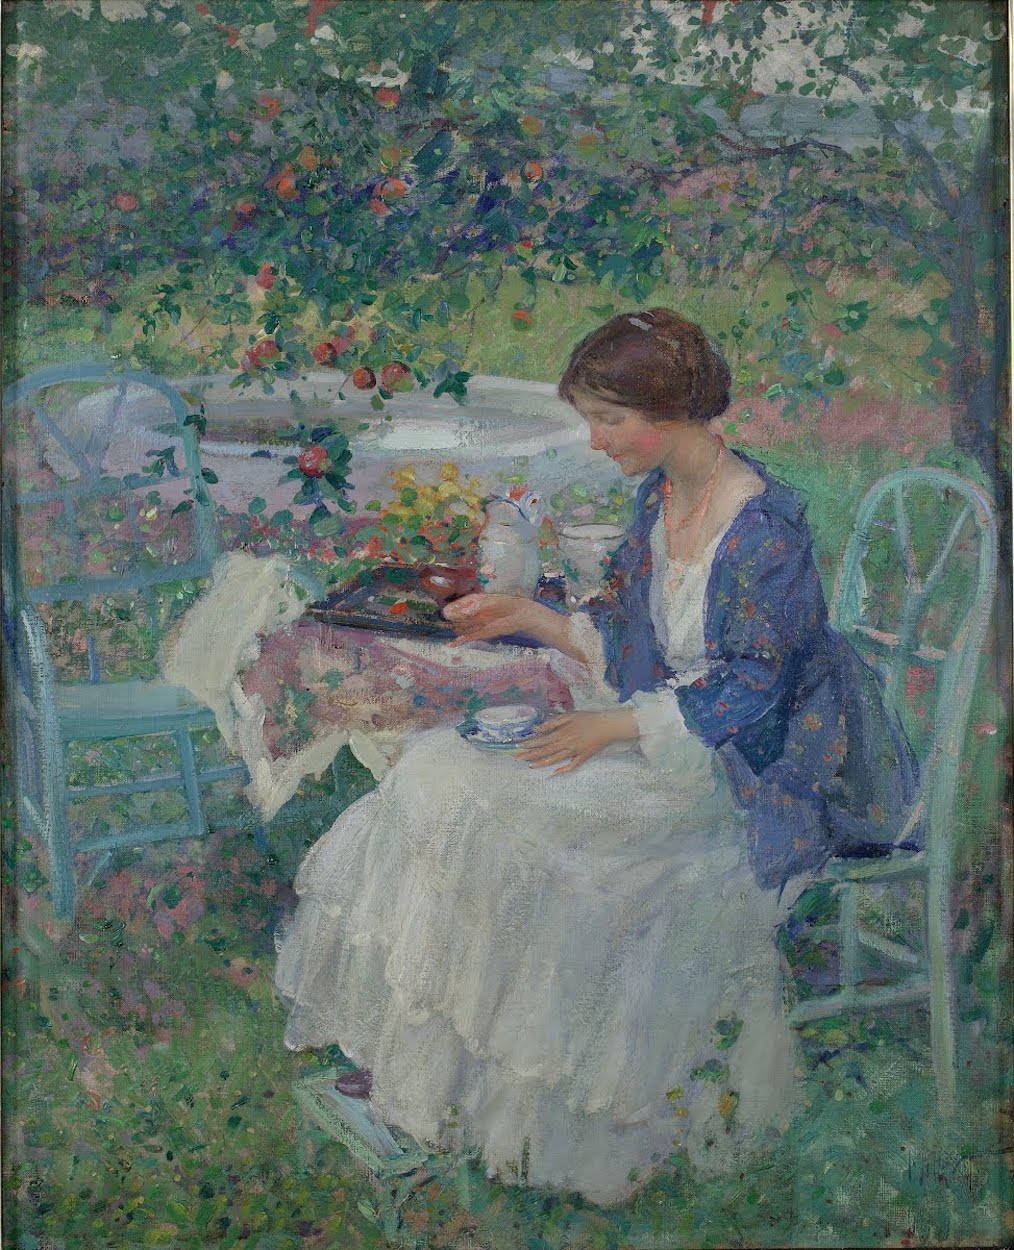 灰色的一天 by Richard E. Miller - 1910/1911 - 99.69 x 80.33 cm 